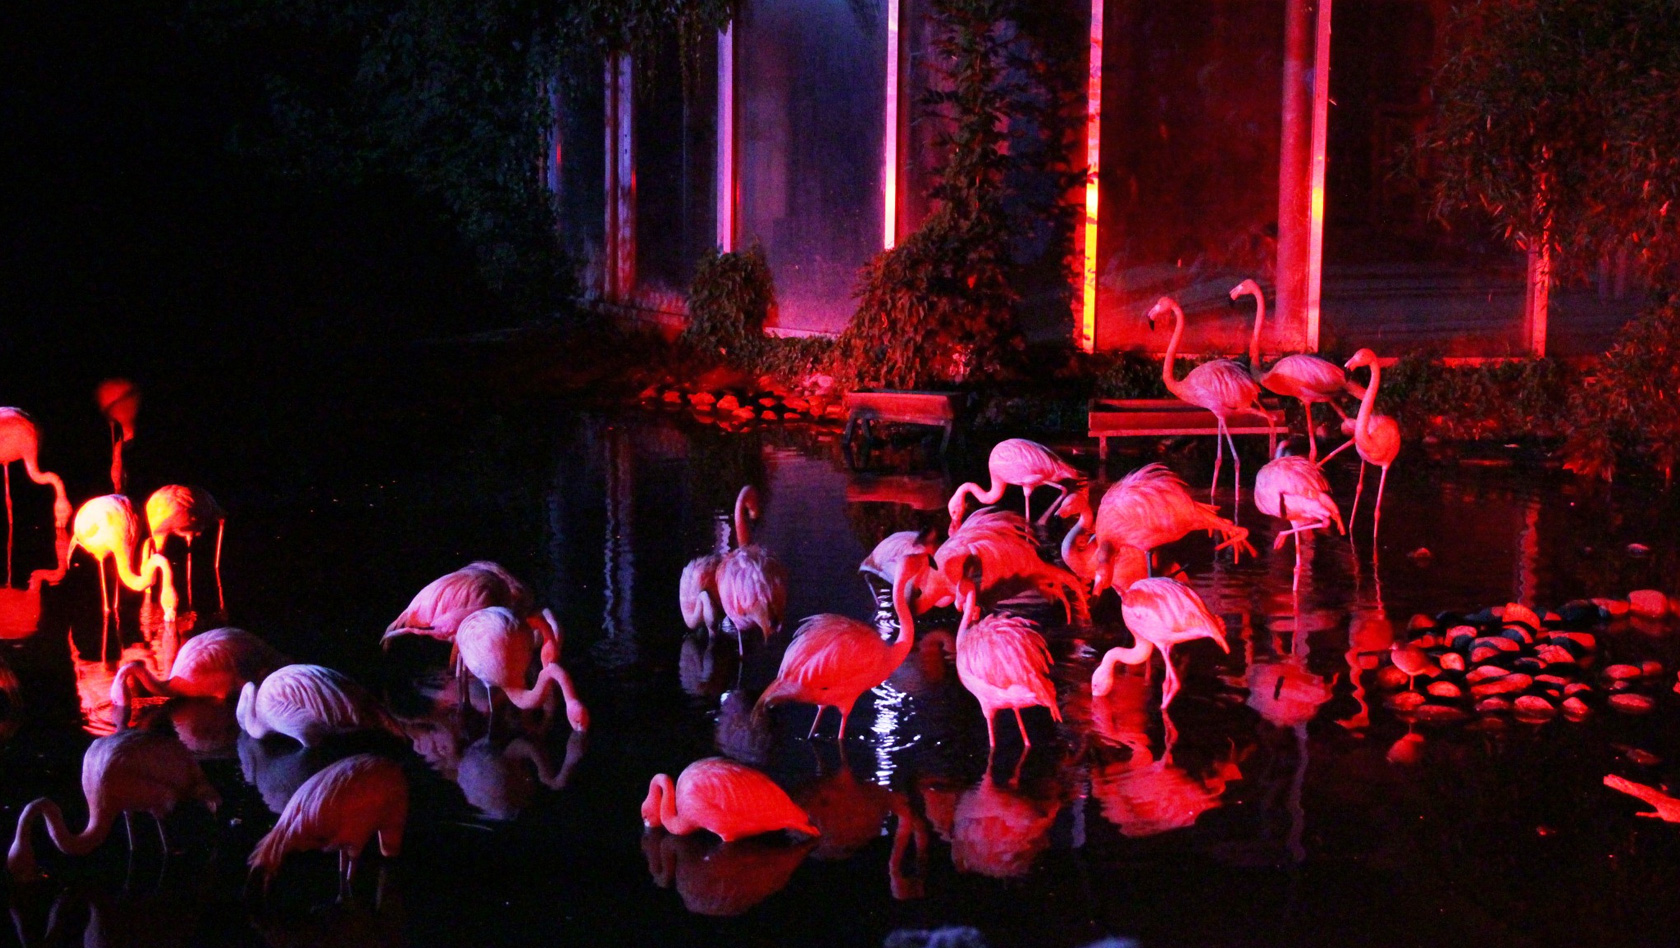 Flamingos im Zoo Osnabrück bei Nacht